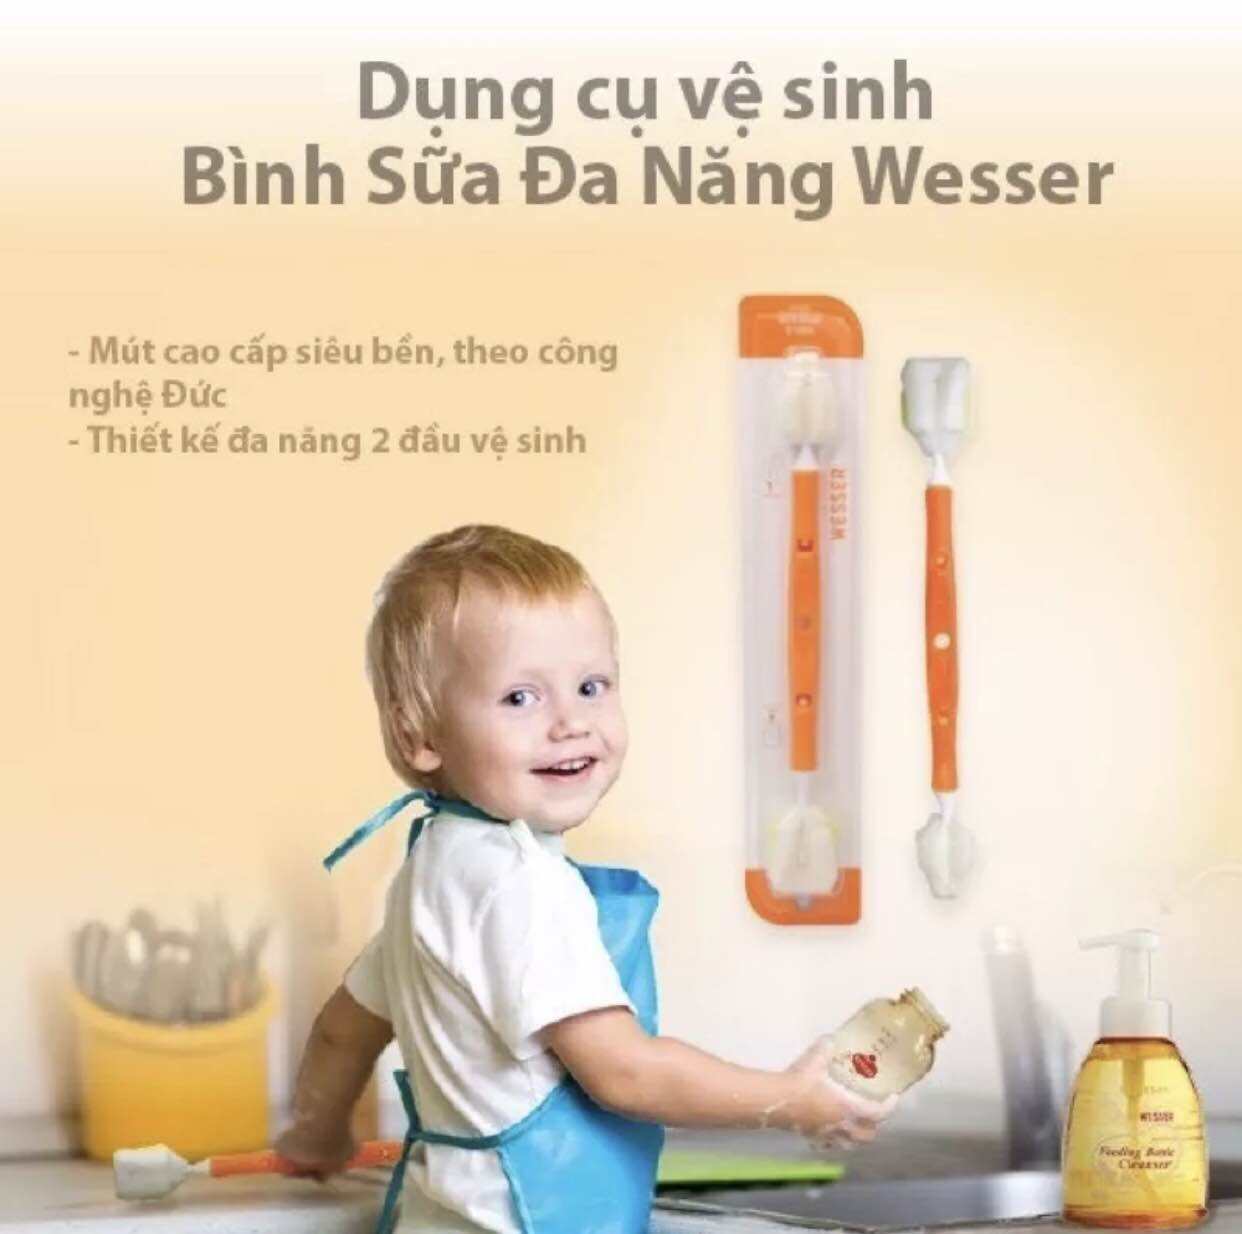 Dụng cụ vệ sinh bình sữa đa năng Wesser